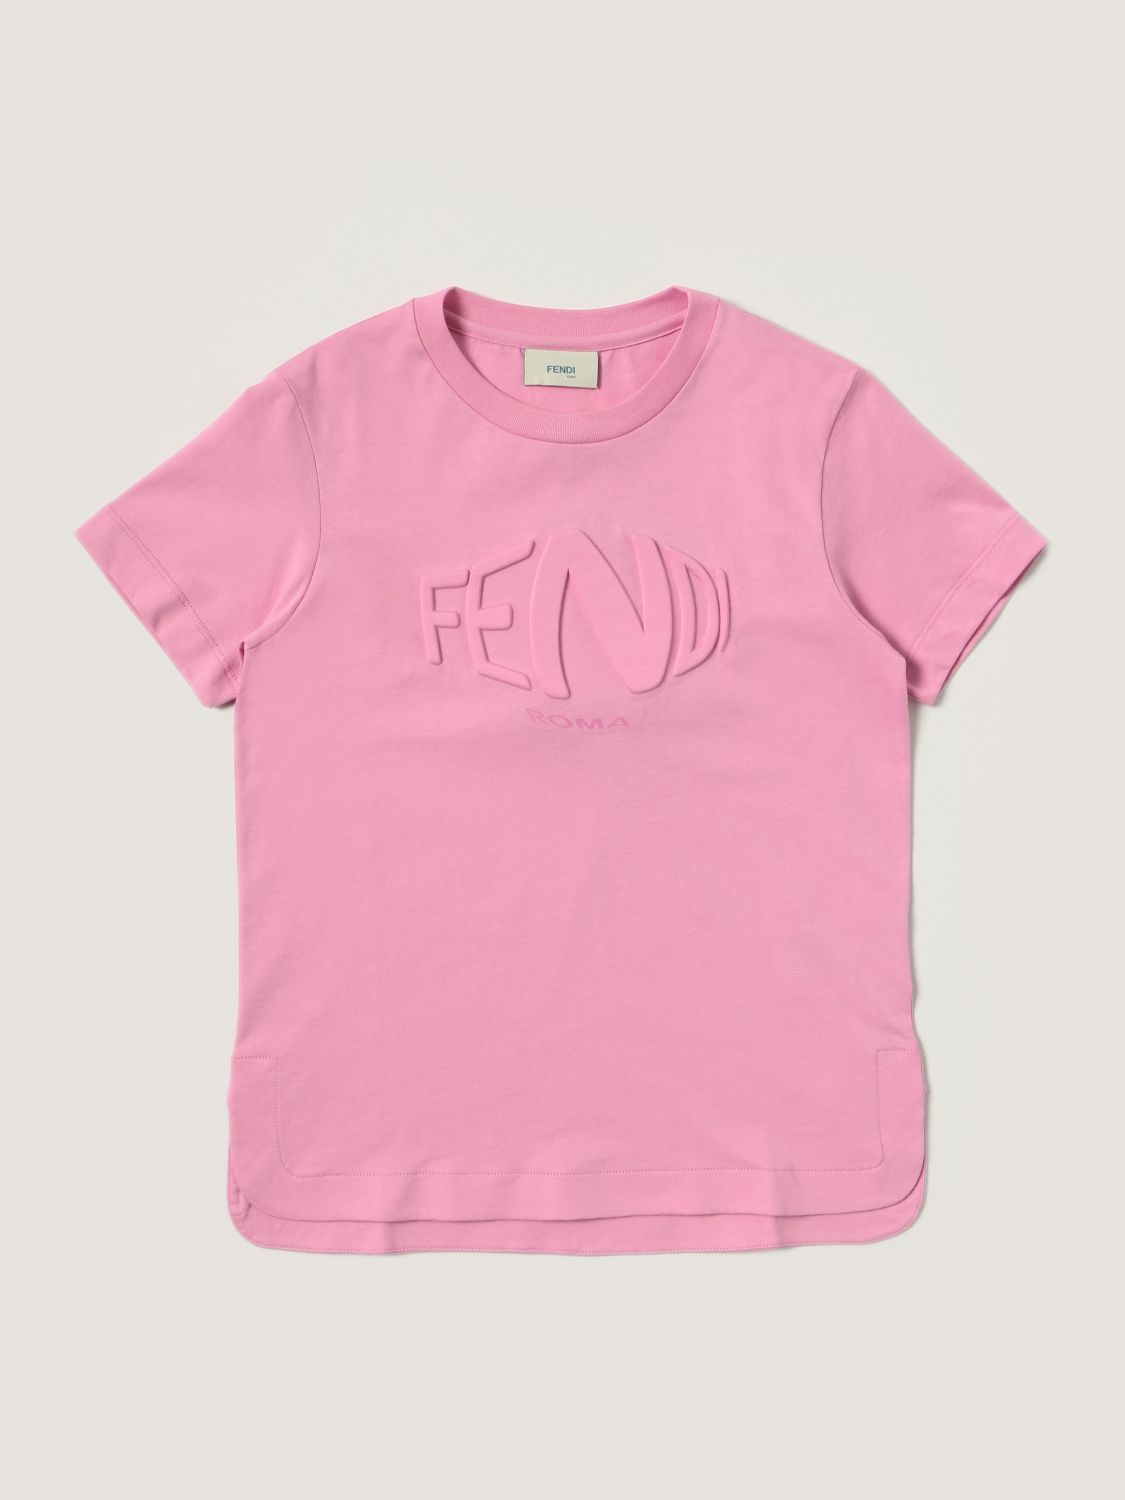 Total 46+ imagen pink fendi t shirt - financieratpv.com.mx